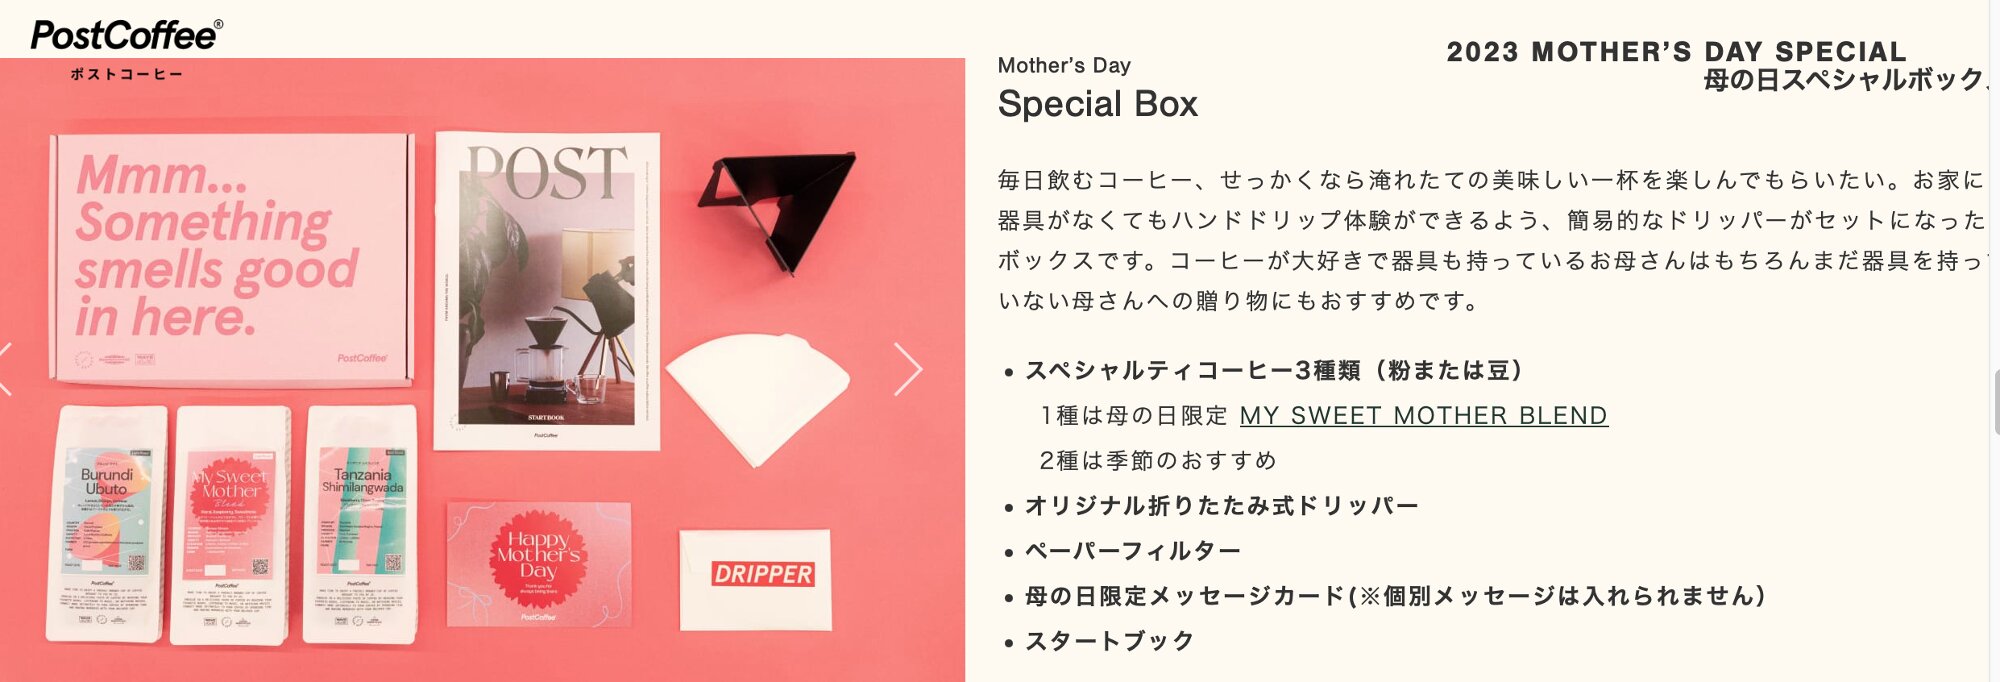 母の日スペシャルボックス